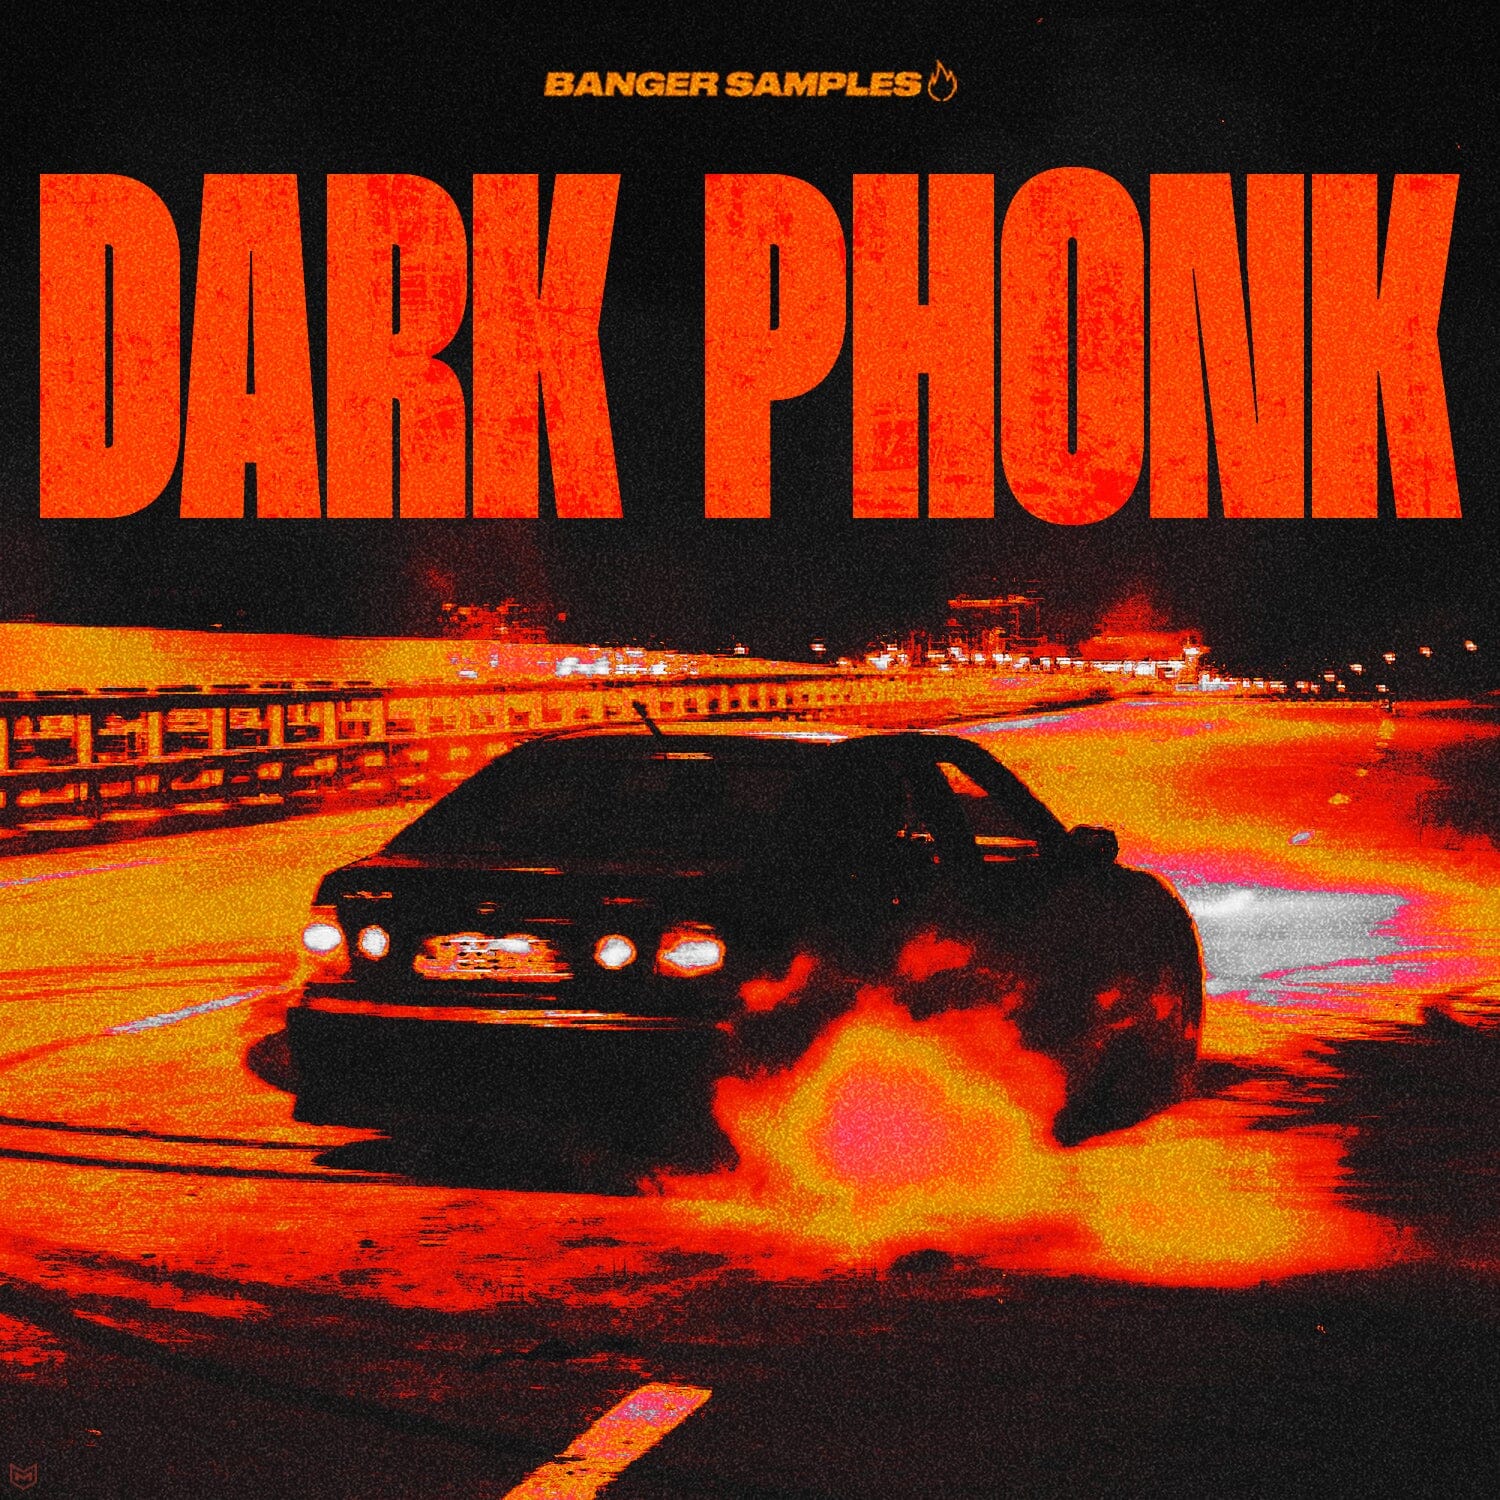 Dark Phonk - Hip Hop ( Construction kits - Loops - Midi Files) Sample Pack Banger Samples